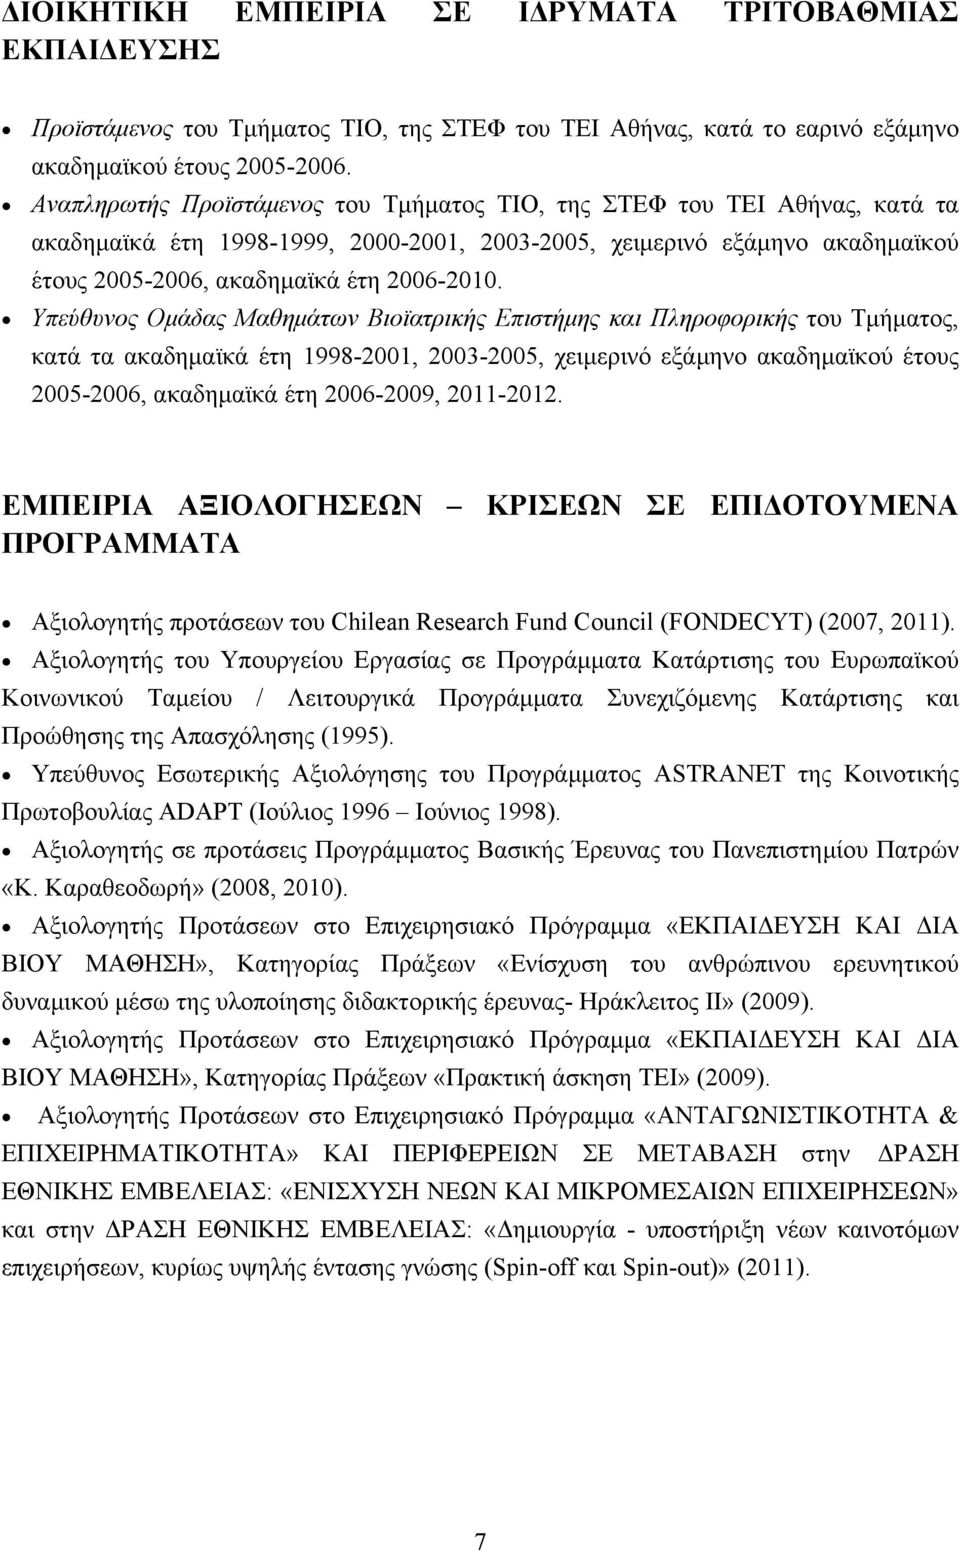 Υπεύθυνος Ομάδας Μαθημάτων Βιοϊατρικής Επιστήμης και Πληροφορικής του Τμήματος, κατά τα ακαδημαϊκά έτη 1998-2001, 2003-2005, χειμερινό εξάμηνο ακαδημαϊκού έτους 2005-2006, ακαδημαϊκά έτη 2006-2009,